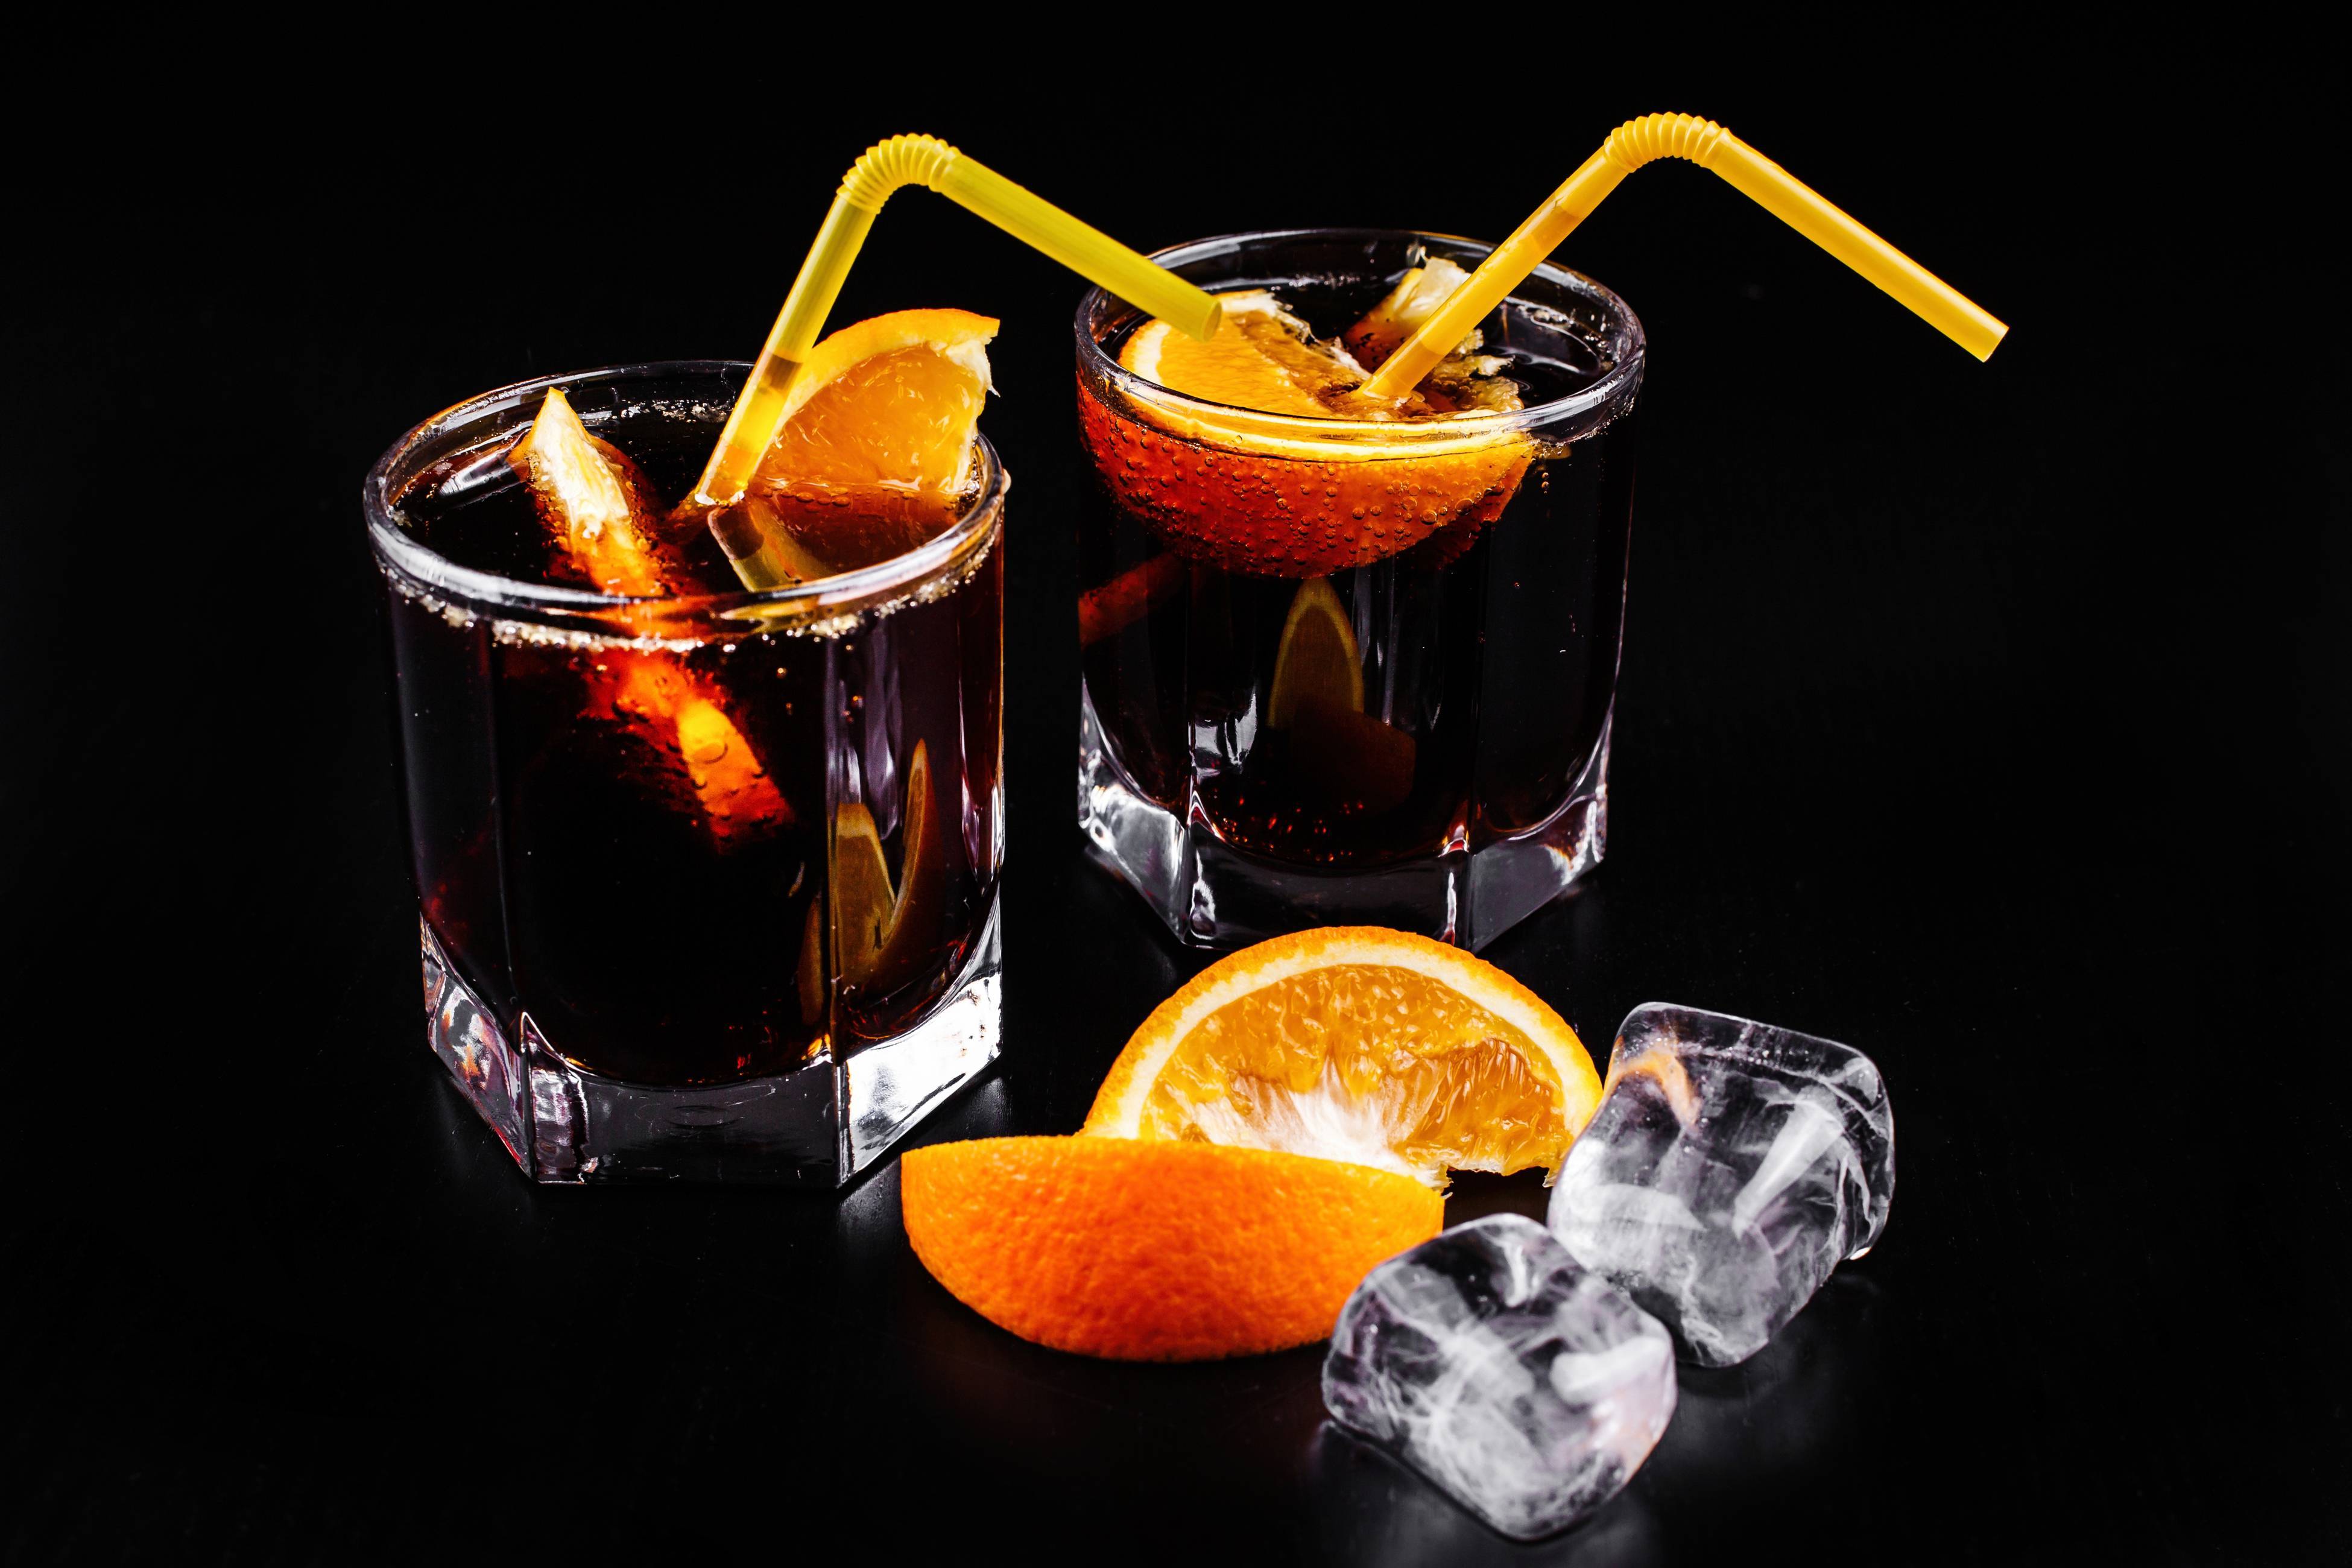 7 способа как пить егермейстер (jagermeister) от знатоков алкогольного дела